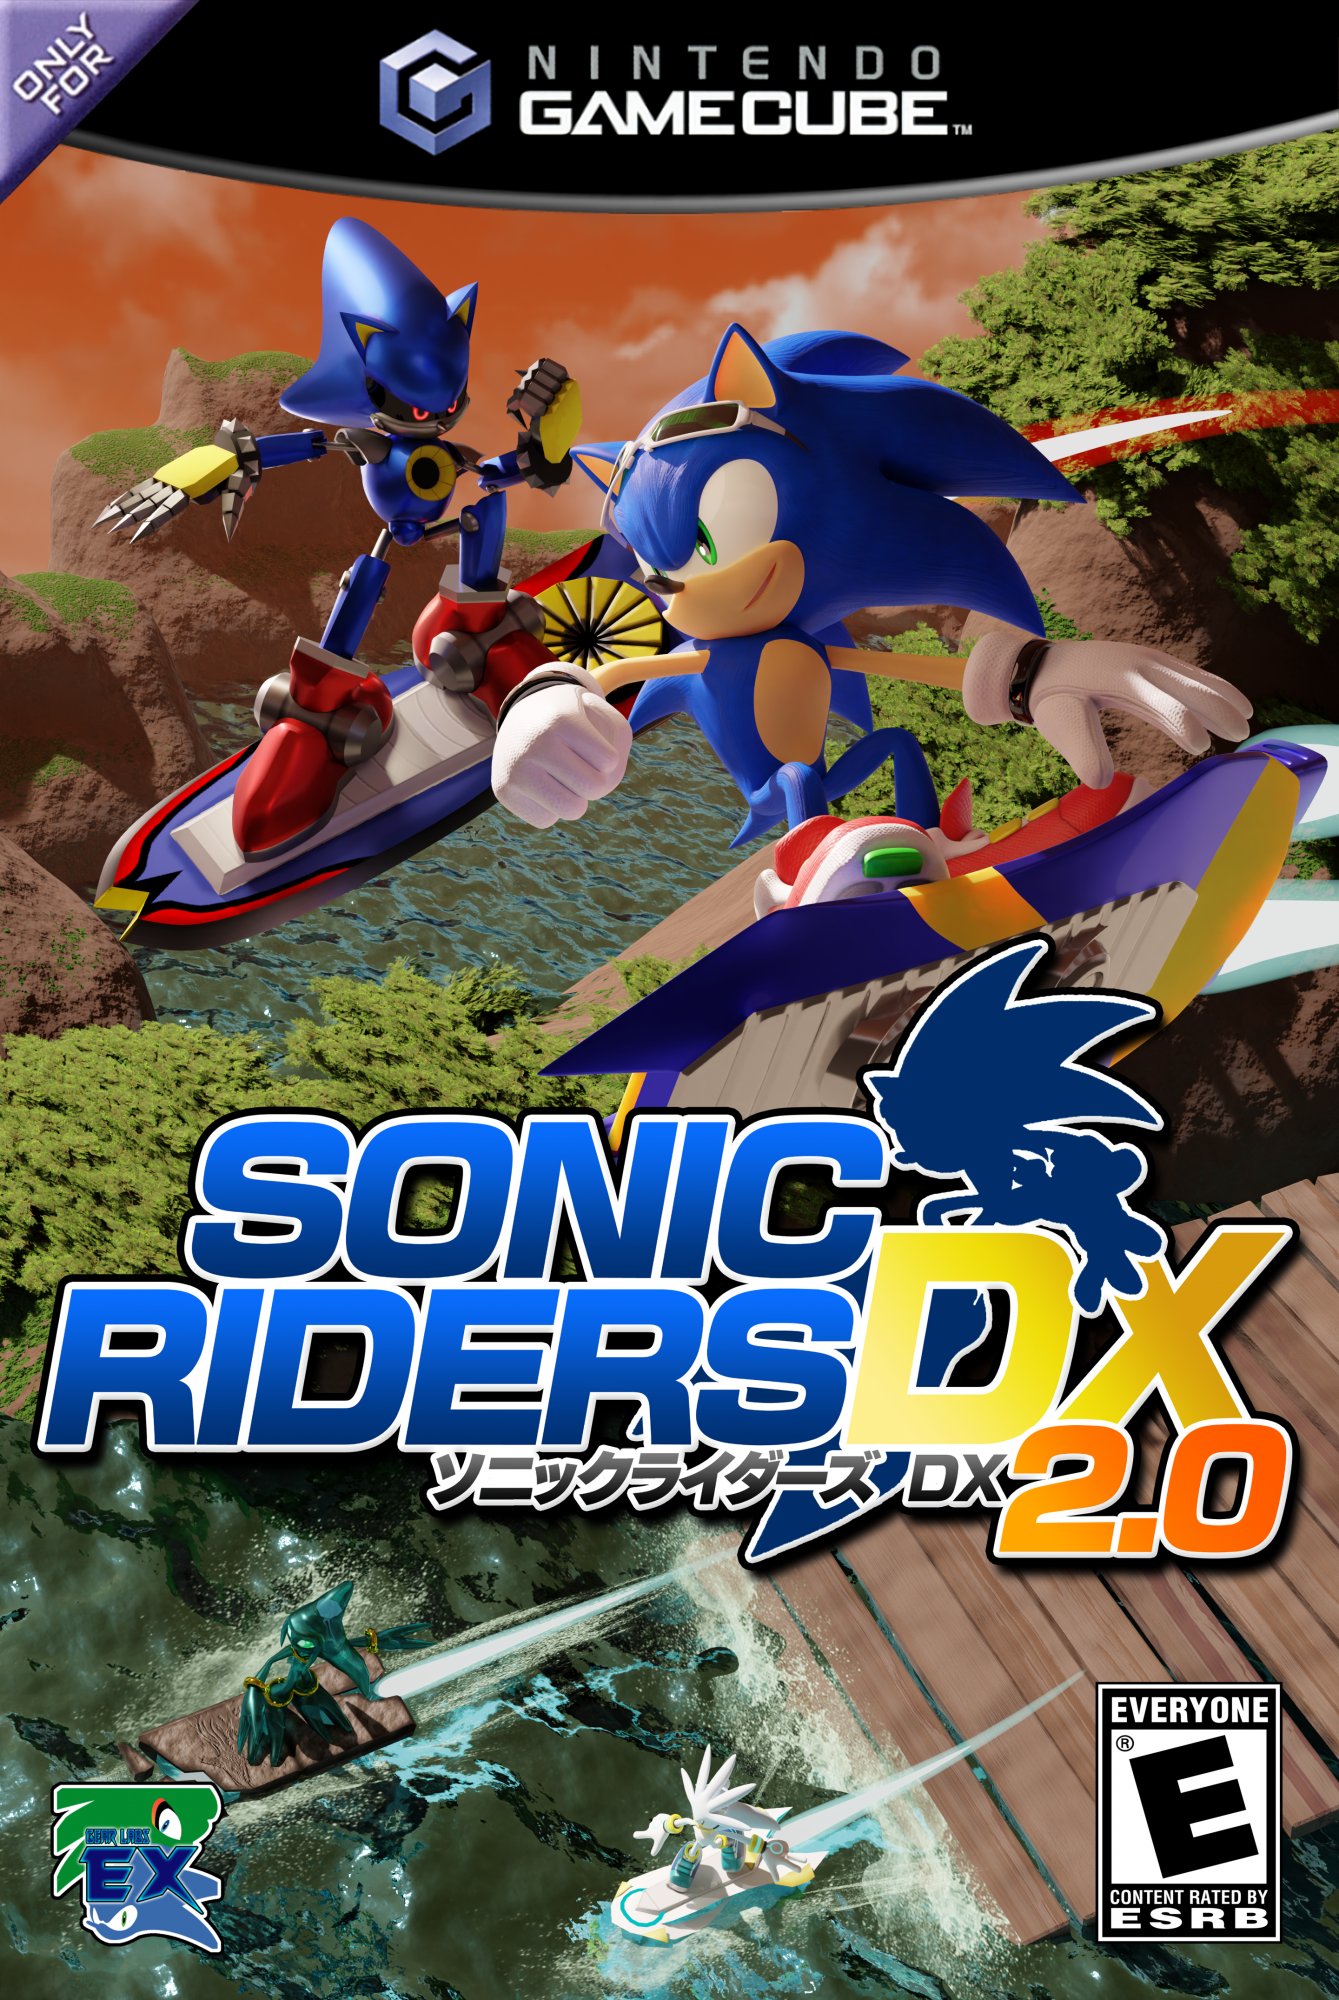 Sonic Riders DX